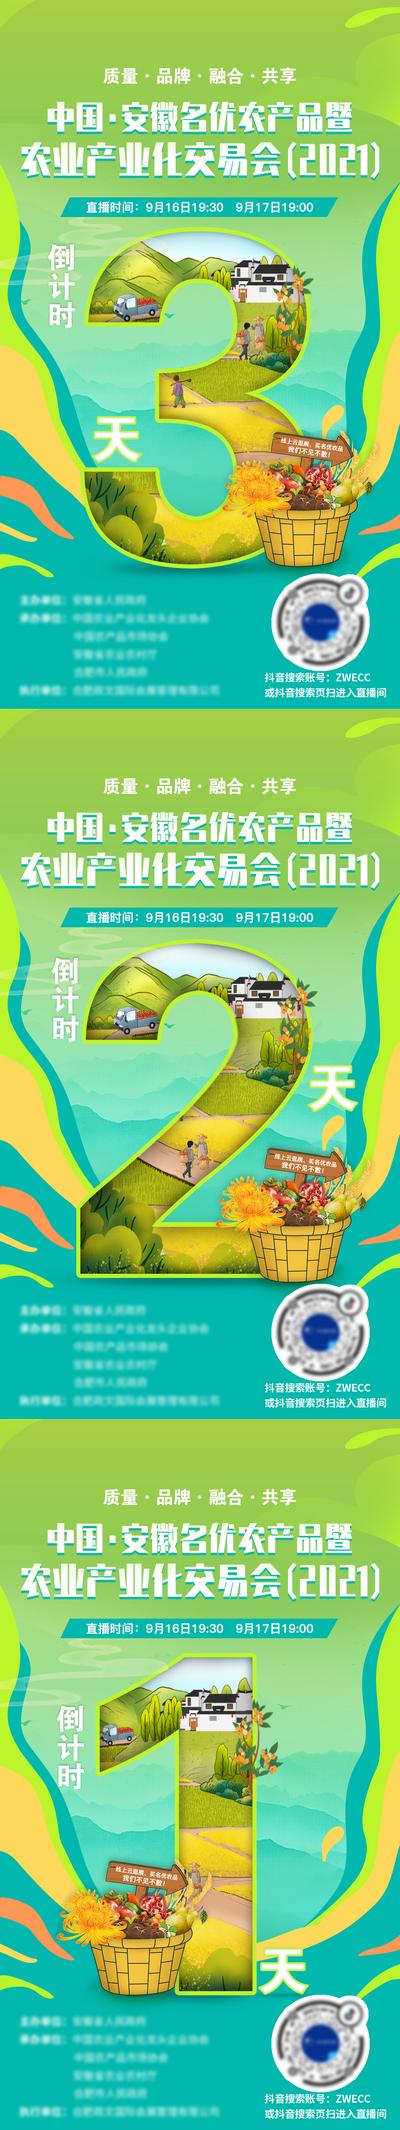 【南门网】海报 倒计时 数字 农产品 乡村 公益 直播 助农 绿色